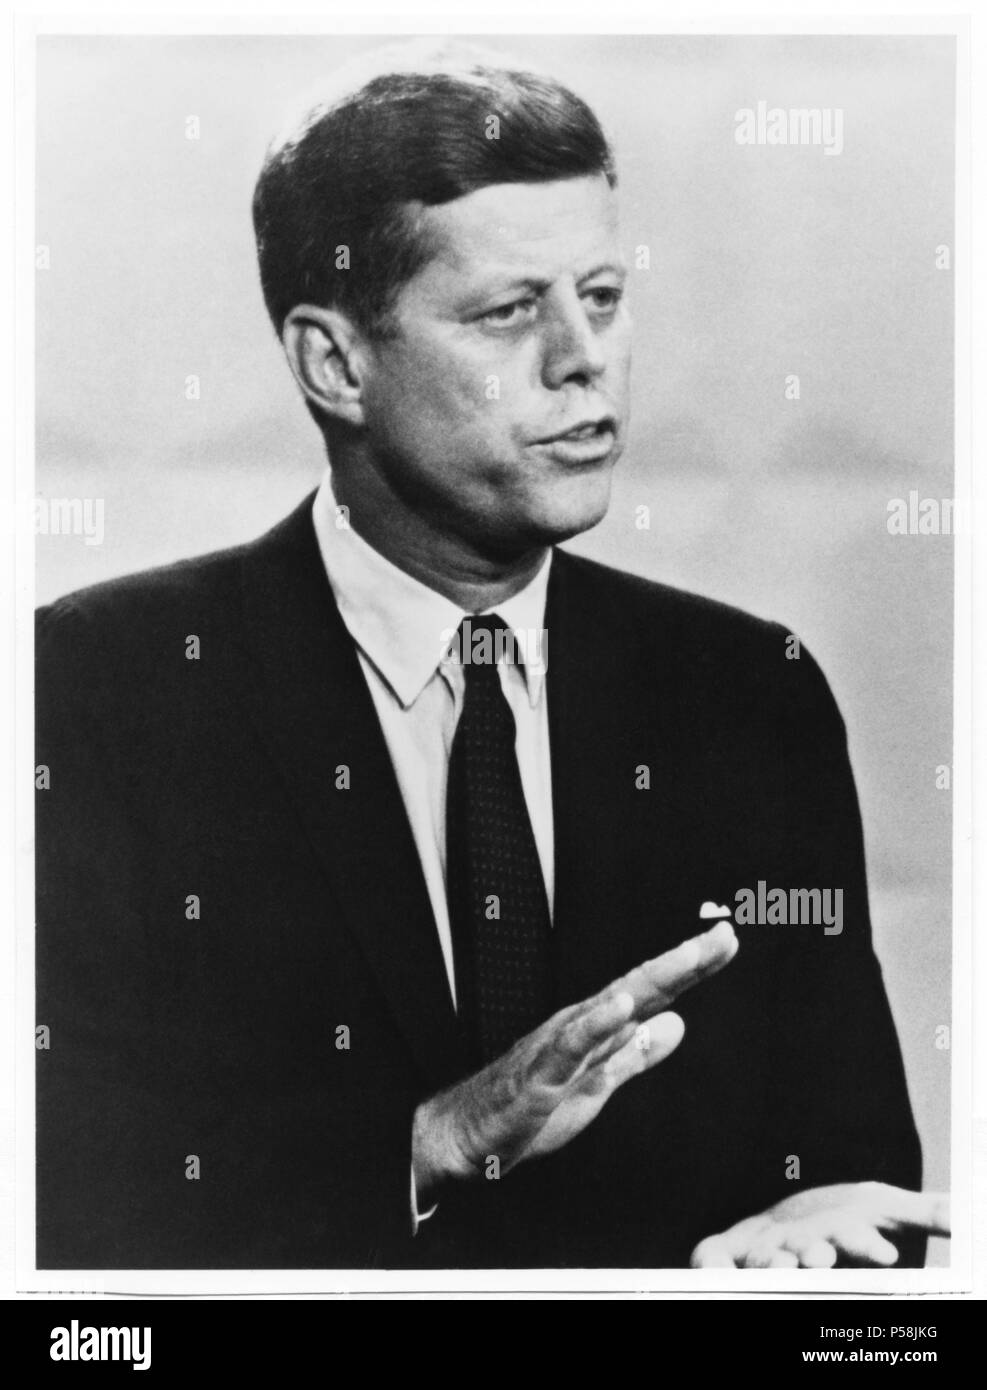 Stati Uniti Il senatore John Kennedy, candidato democratico PER GLI STATI UNITI Presidente, durante il dibattito teletrasmesso con Richard Nixon, 1960 Foto Stock